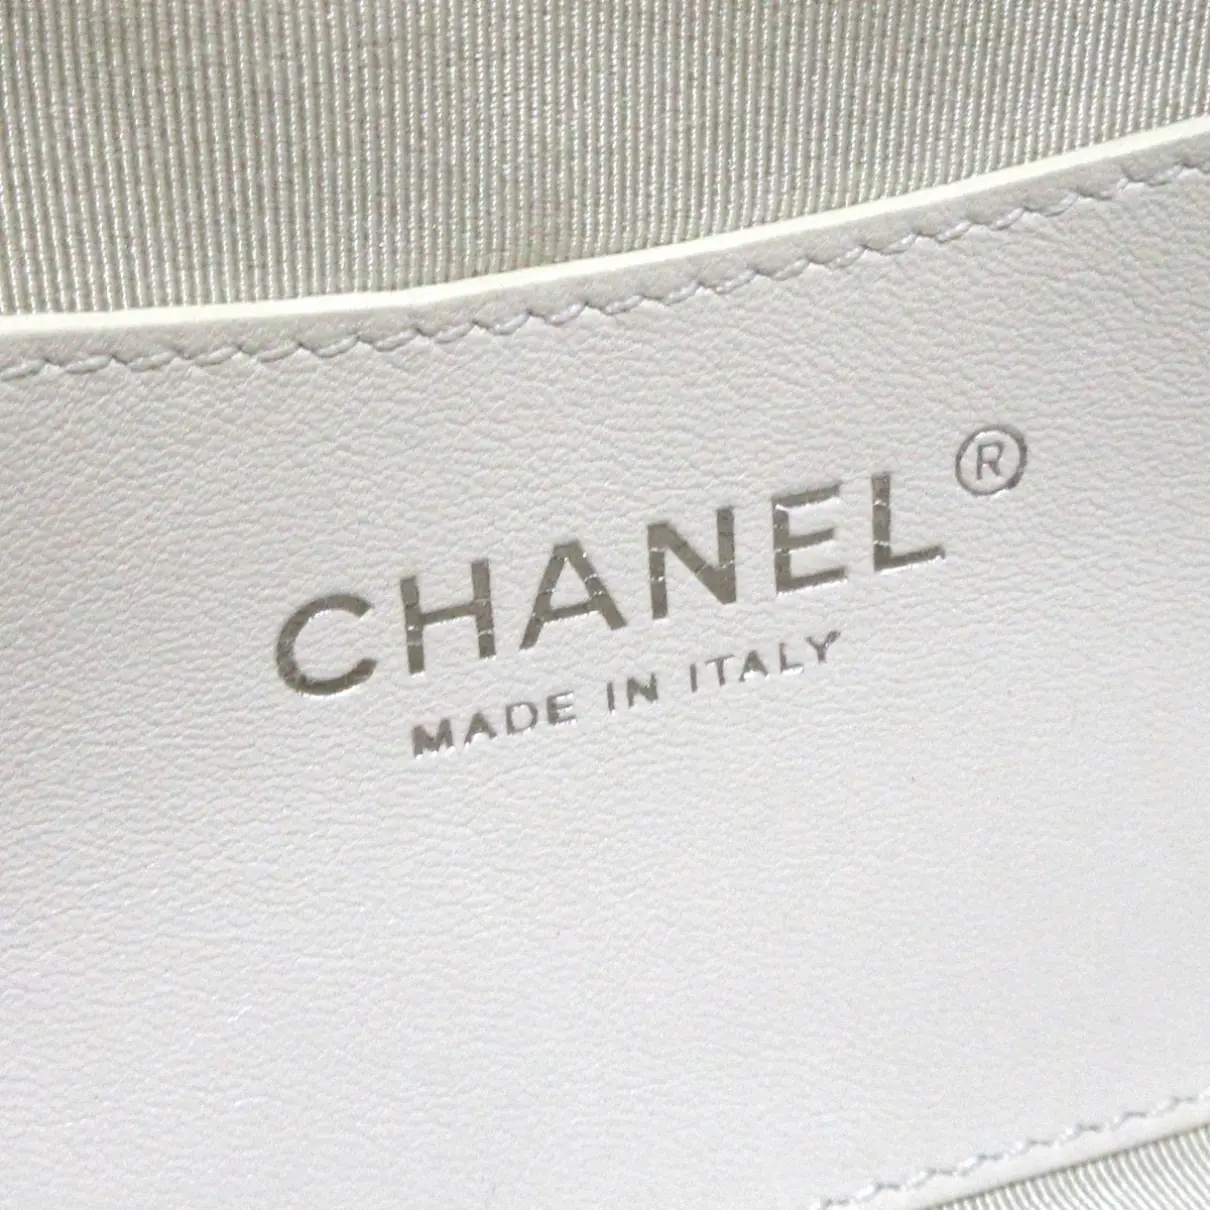 Bowling Bag leather handbag Chanel